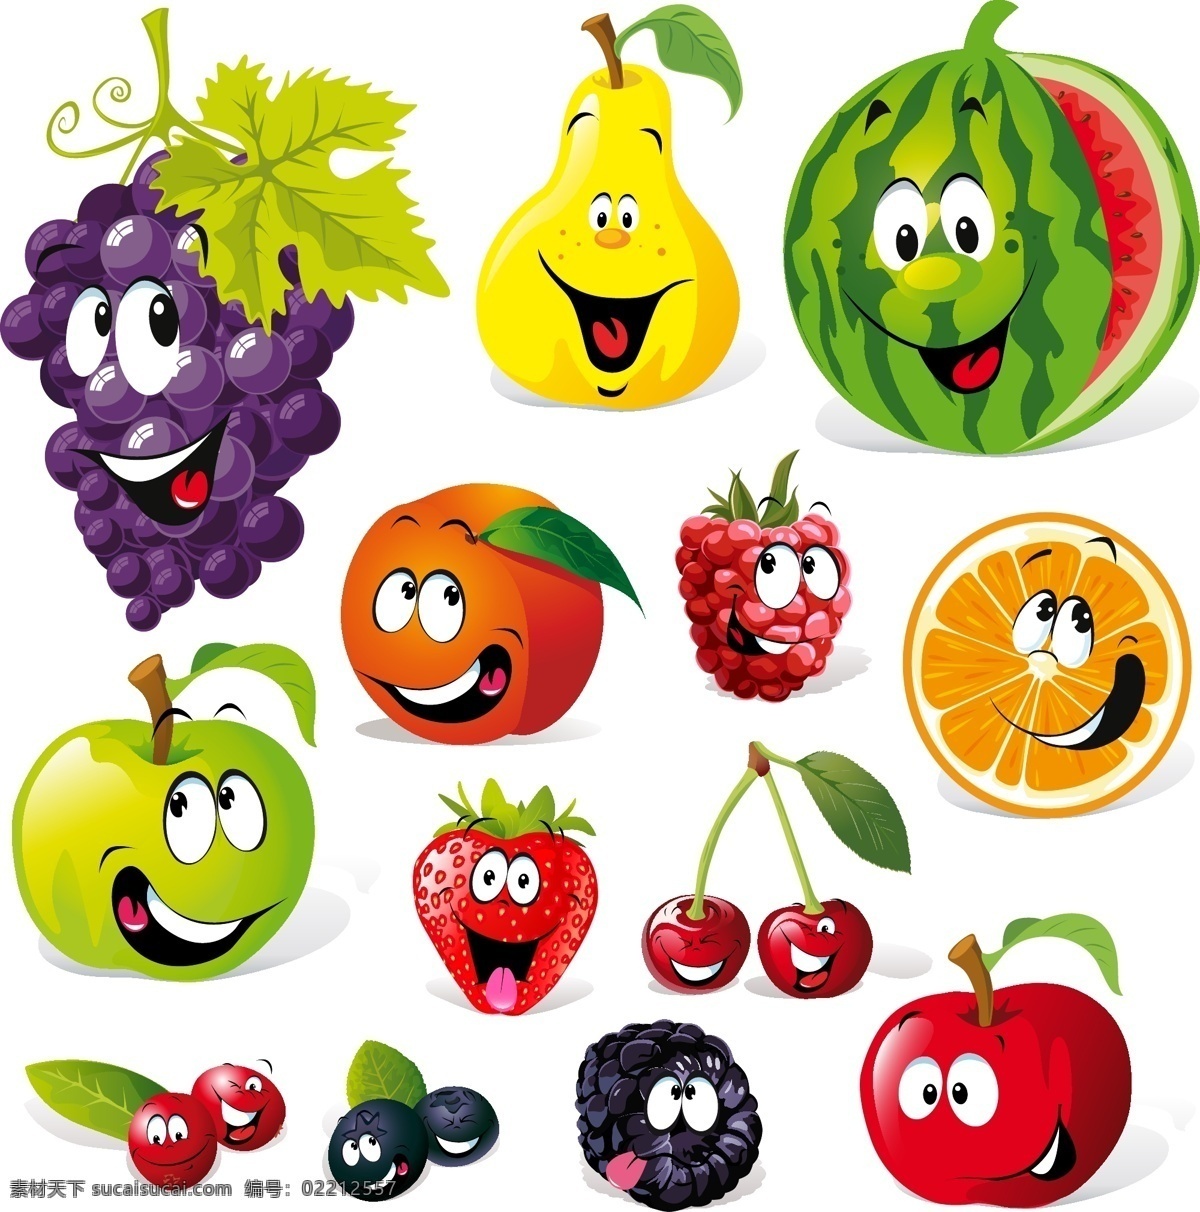 卡通 蔬果 矢量 表情 草莓 橙子 桔子 可爱 苹果 葡萄 水果 西瓜 樱桃 洋葱 西红柿 矢量图 其他矢量图